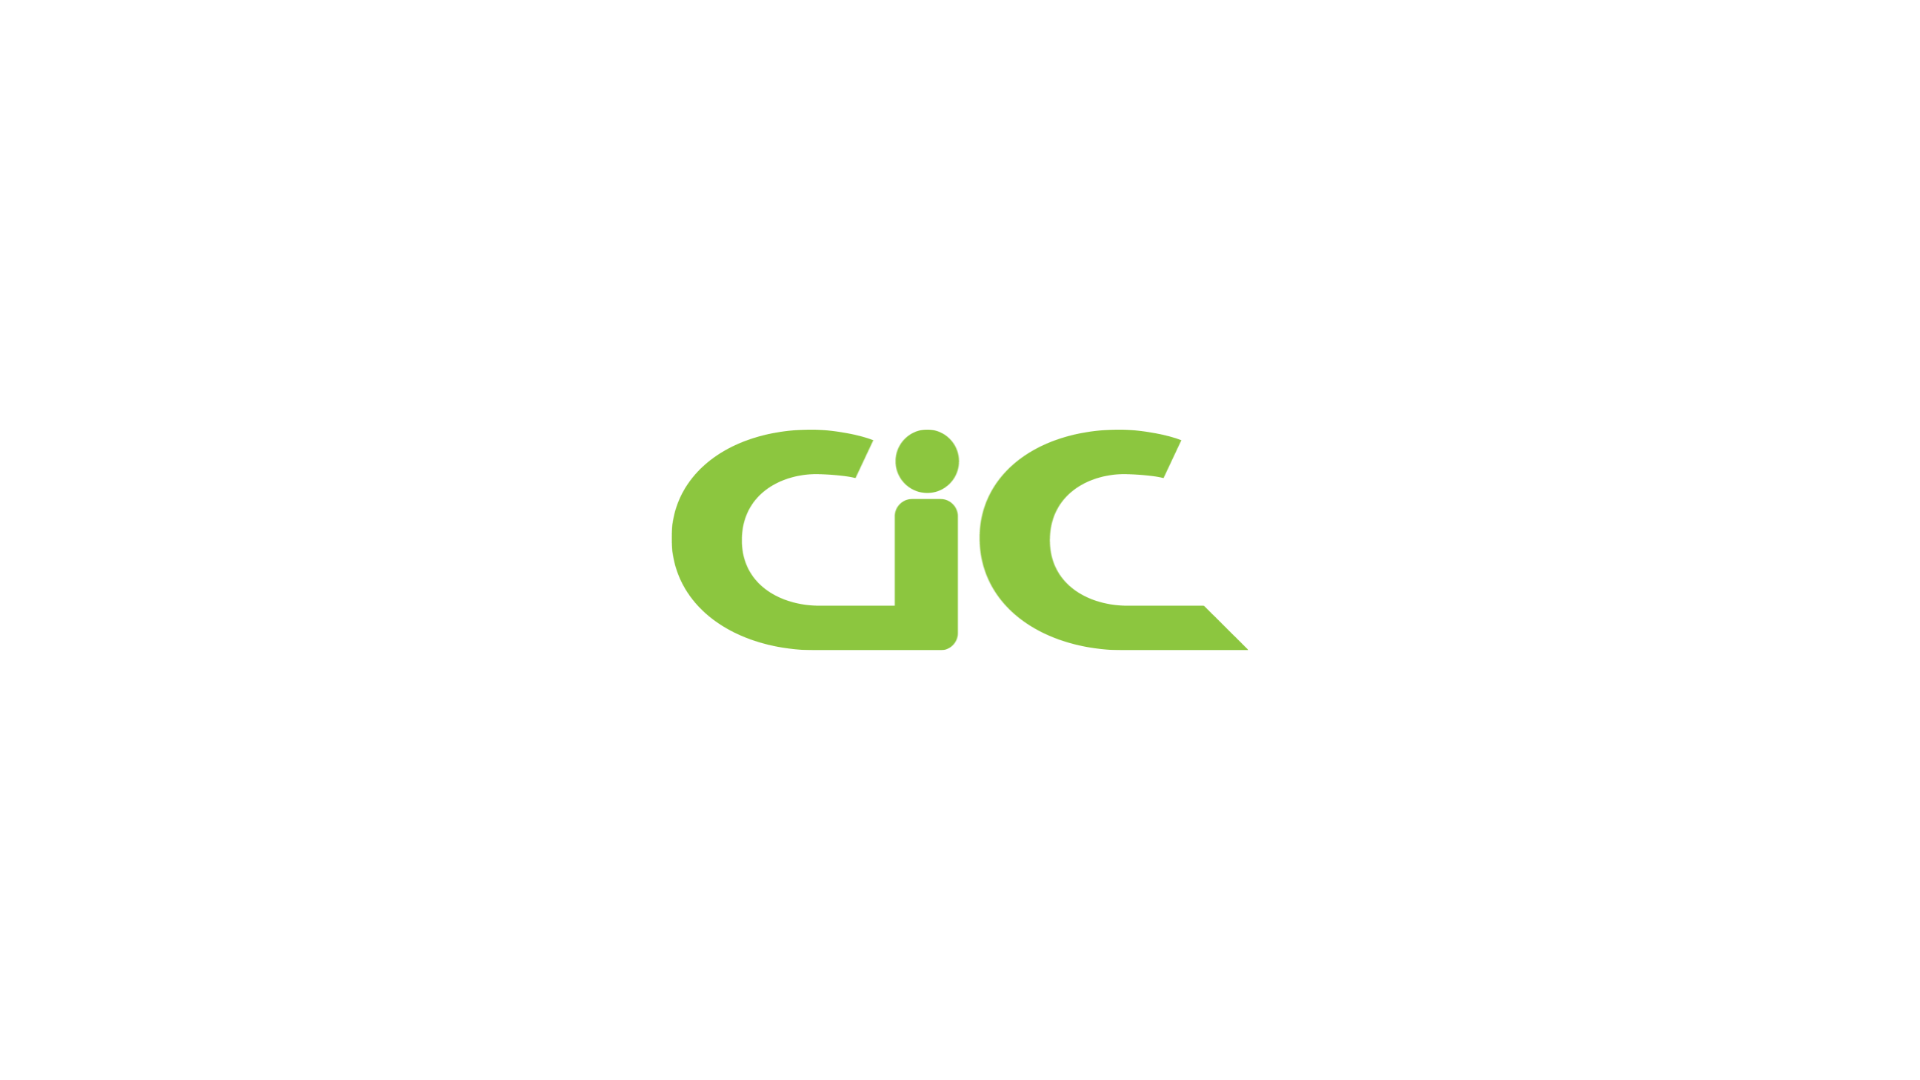 CiC logo